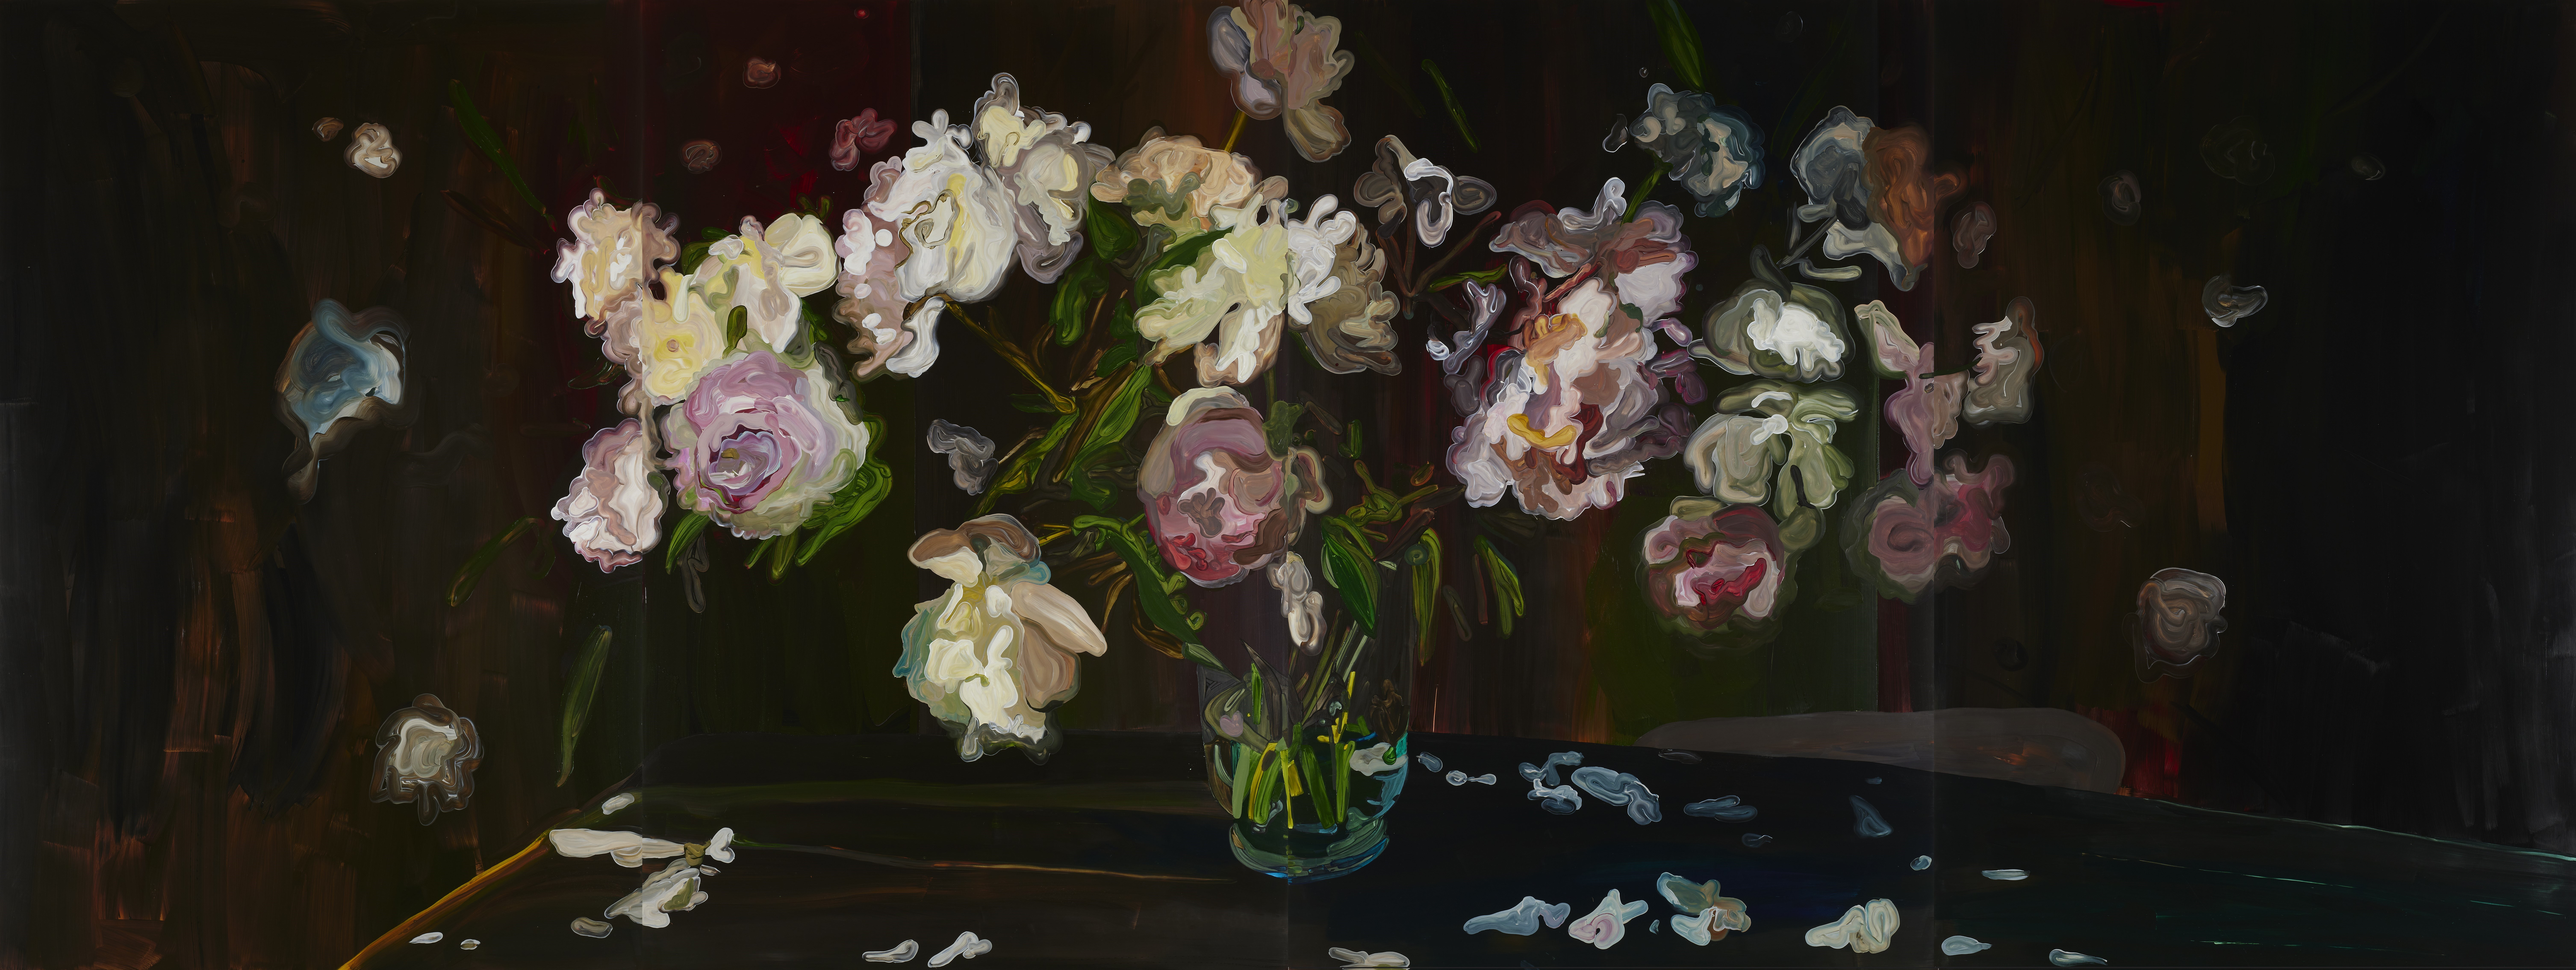 Målade blommor i en vas på ett mörkt bord